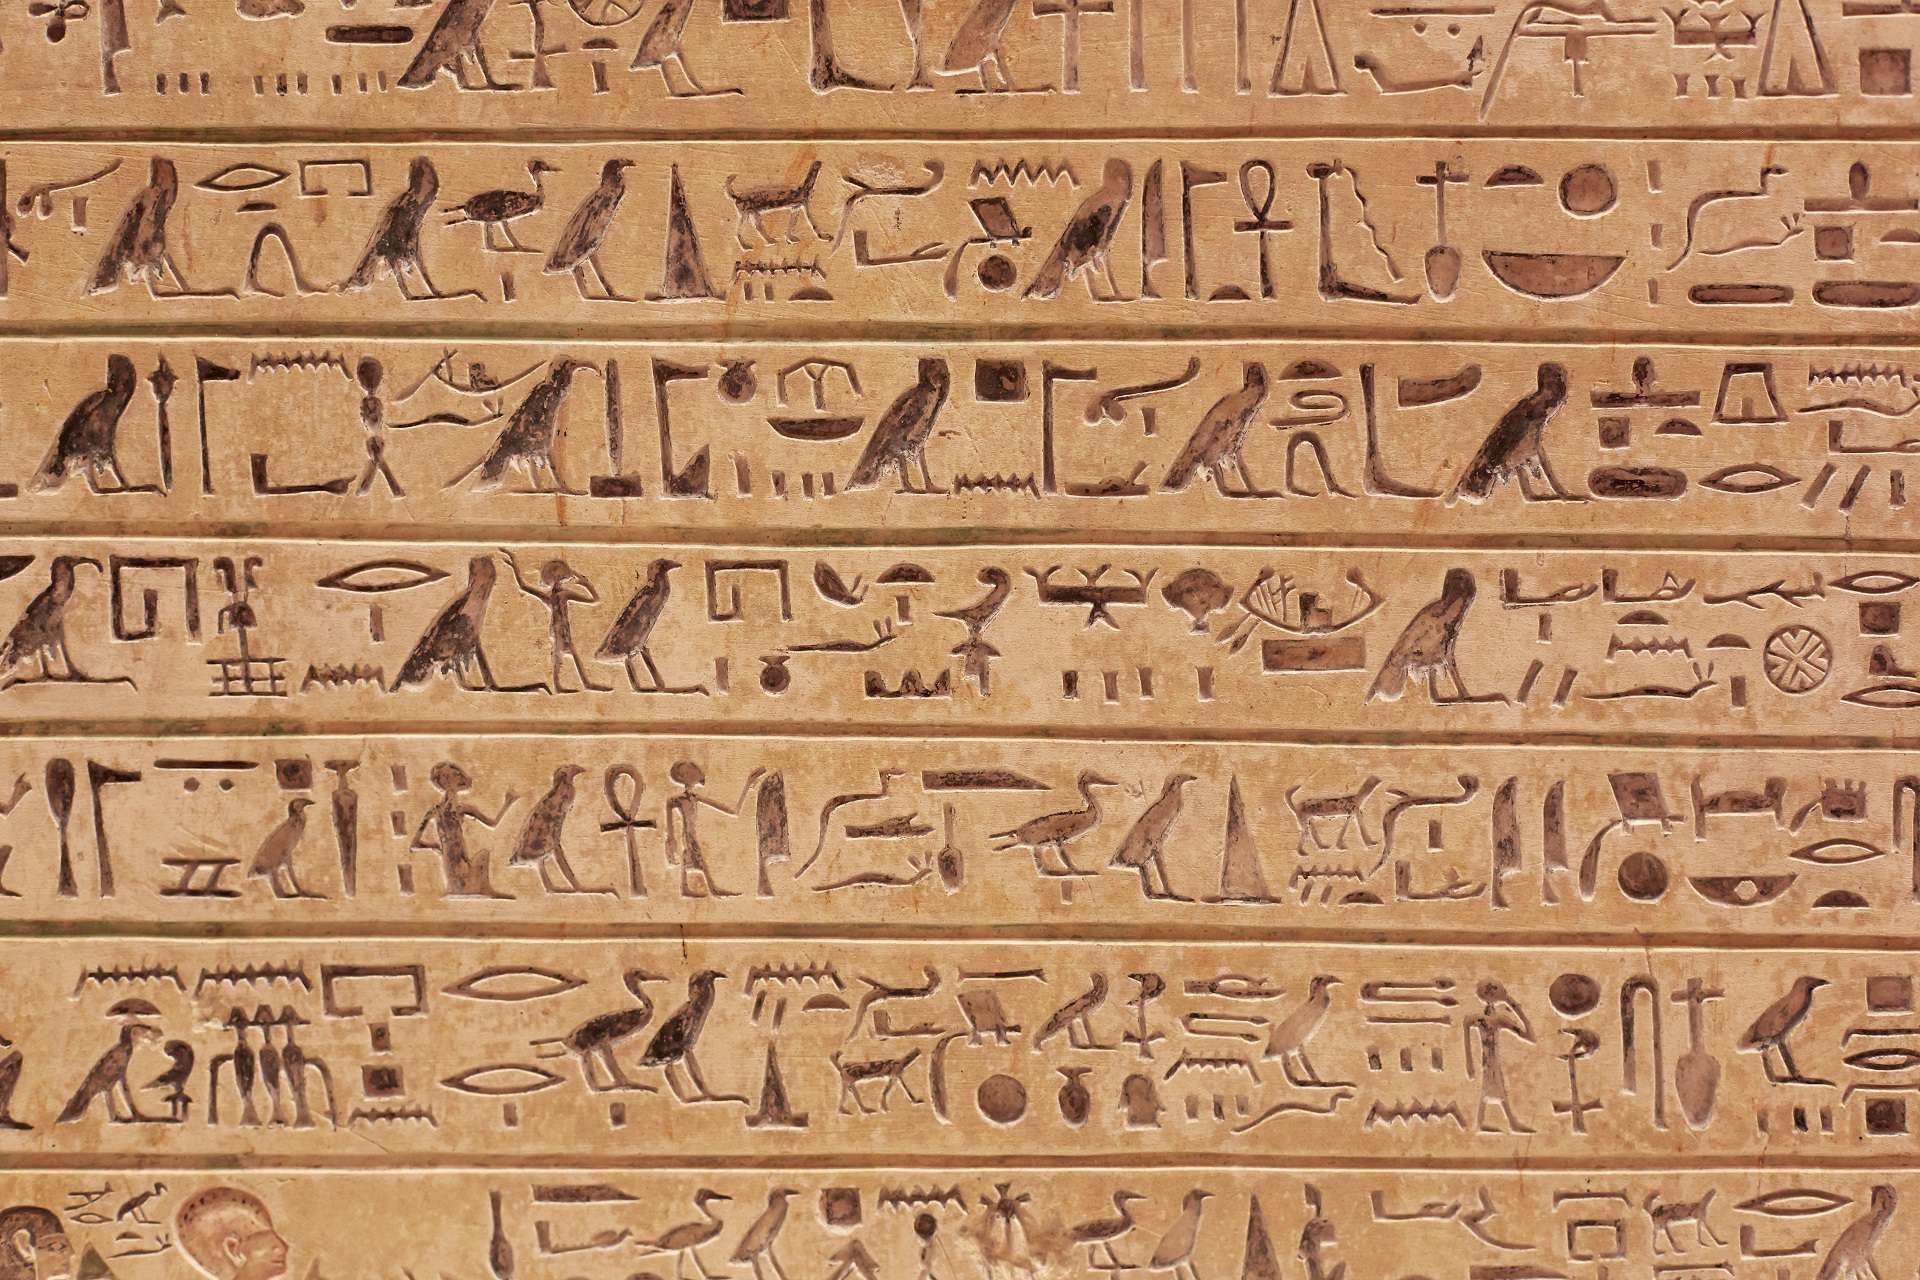 HIEROGLIFY – NAJWCZEŚNIEJSZY RODZAJ PISMA STAROŻYTNEGO EGIPTU